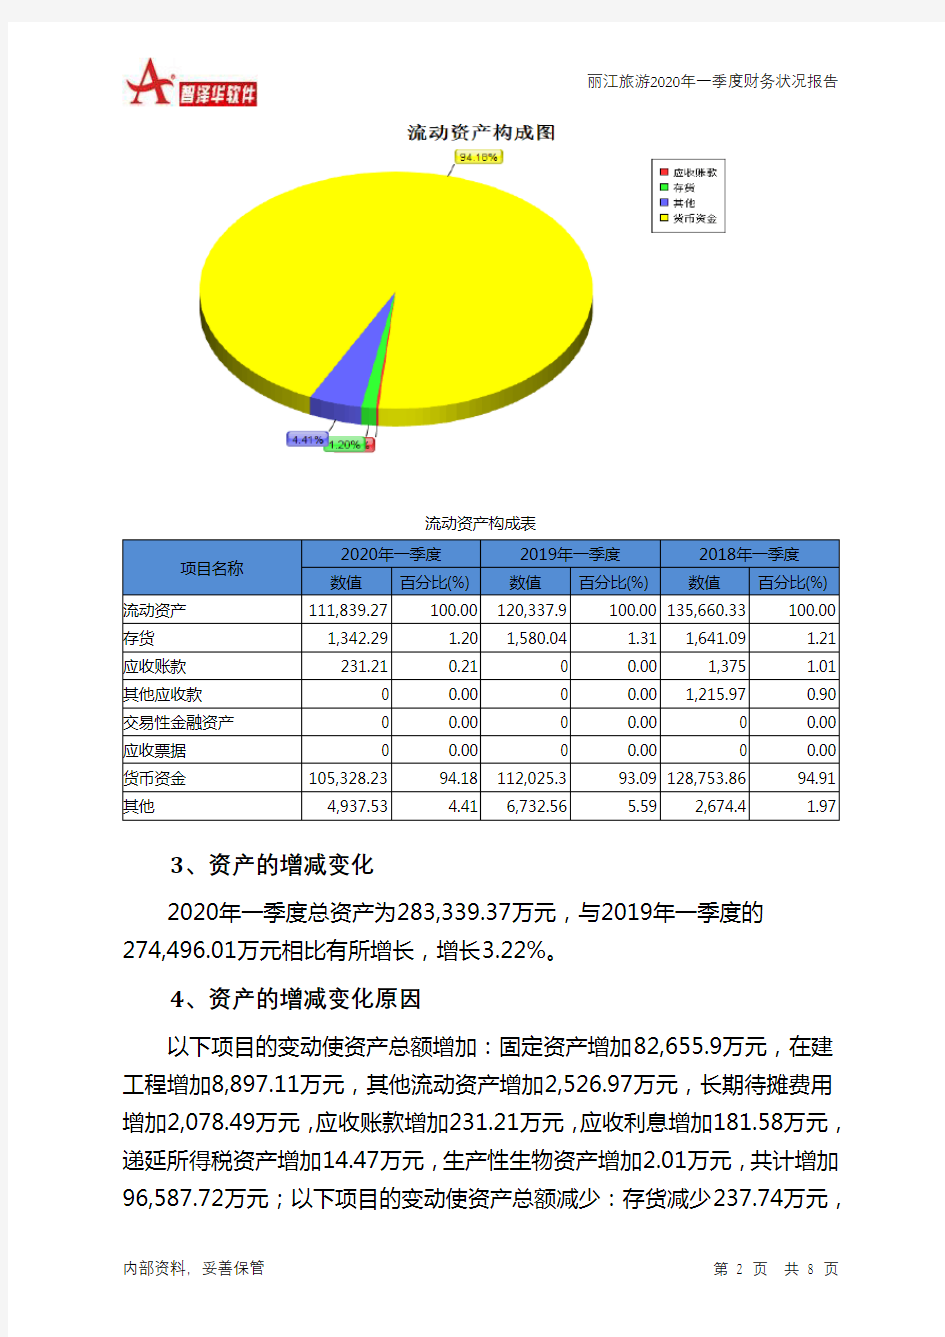 丽江旅游2020年一季度财务状况报告